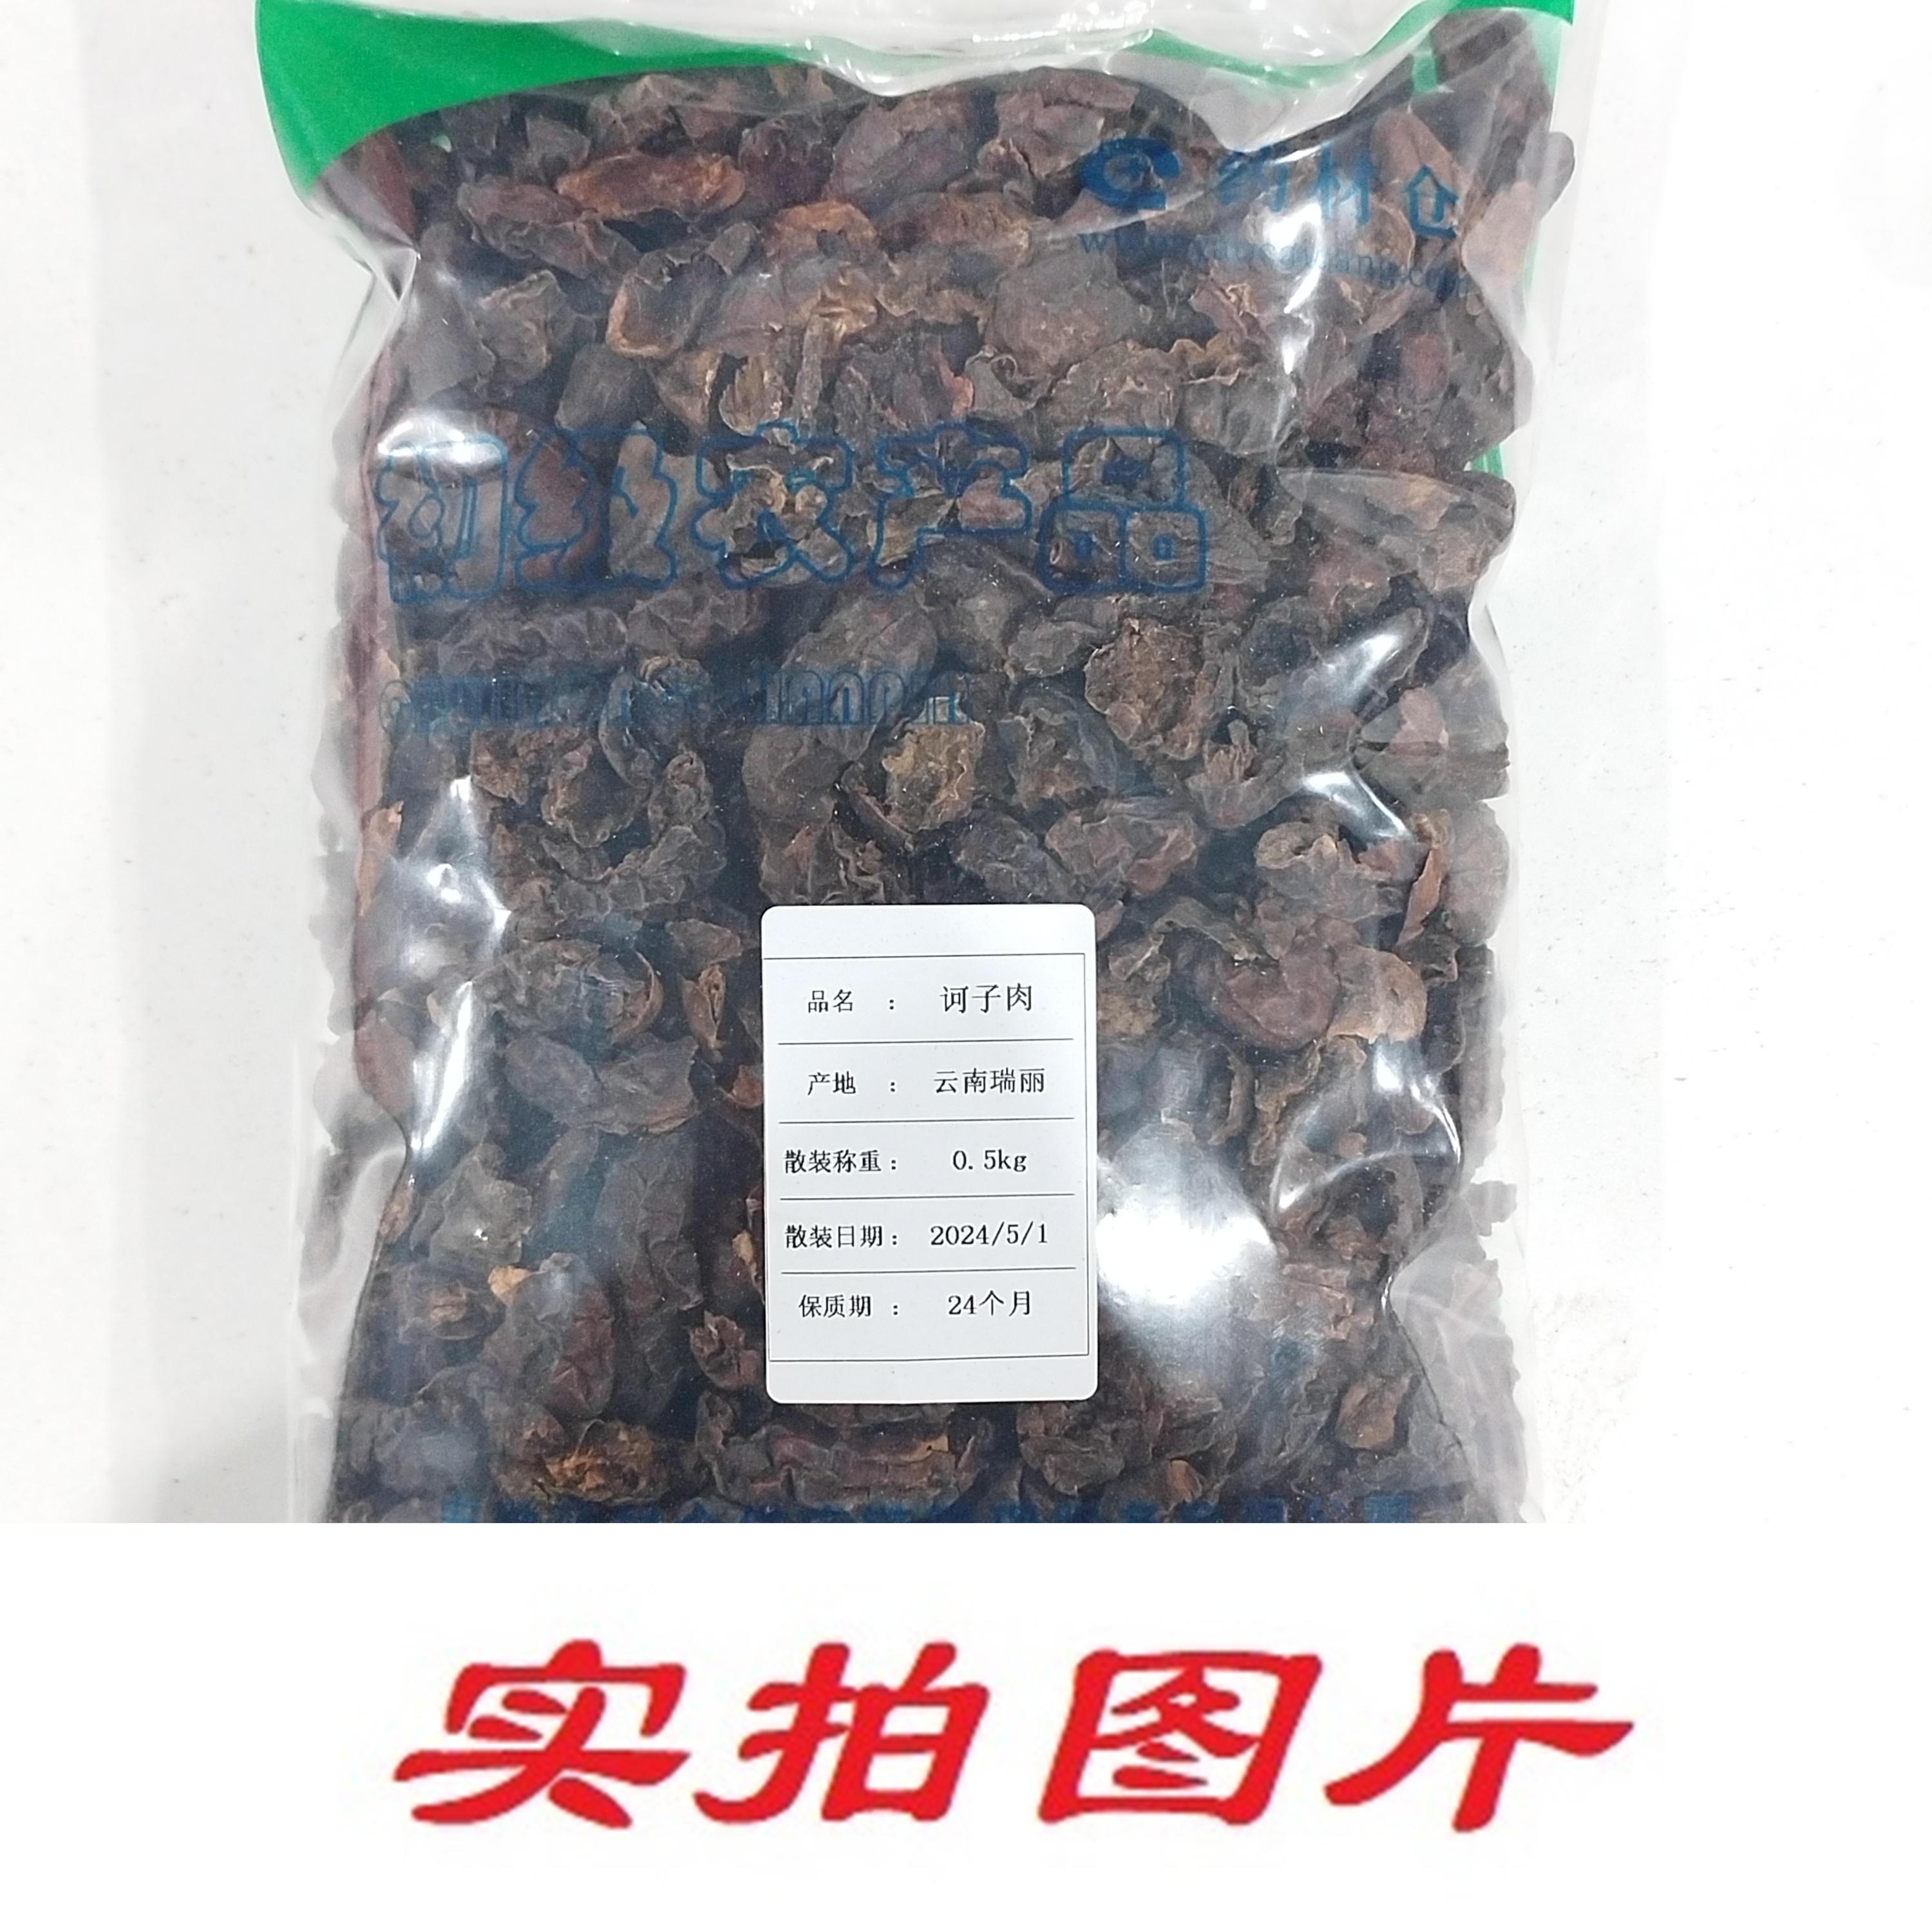 【】诃子肉0.5kg-农副产品